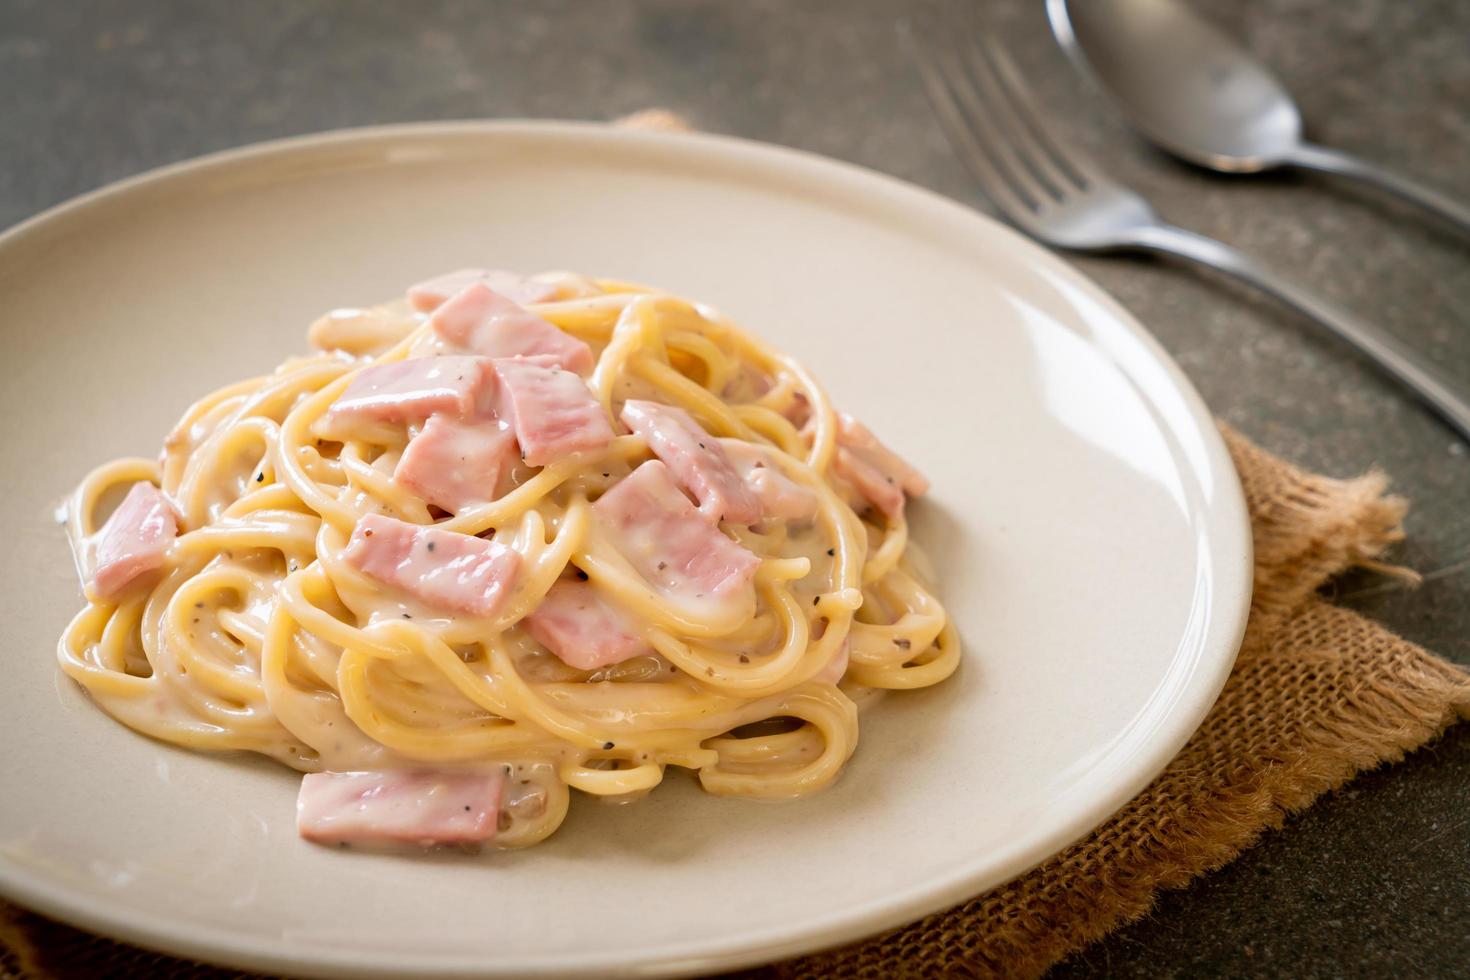 espaguete caseiro com molho de creme branco com presunto - comida italiana foto